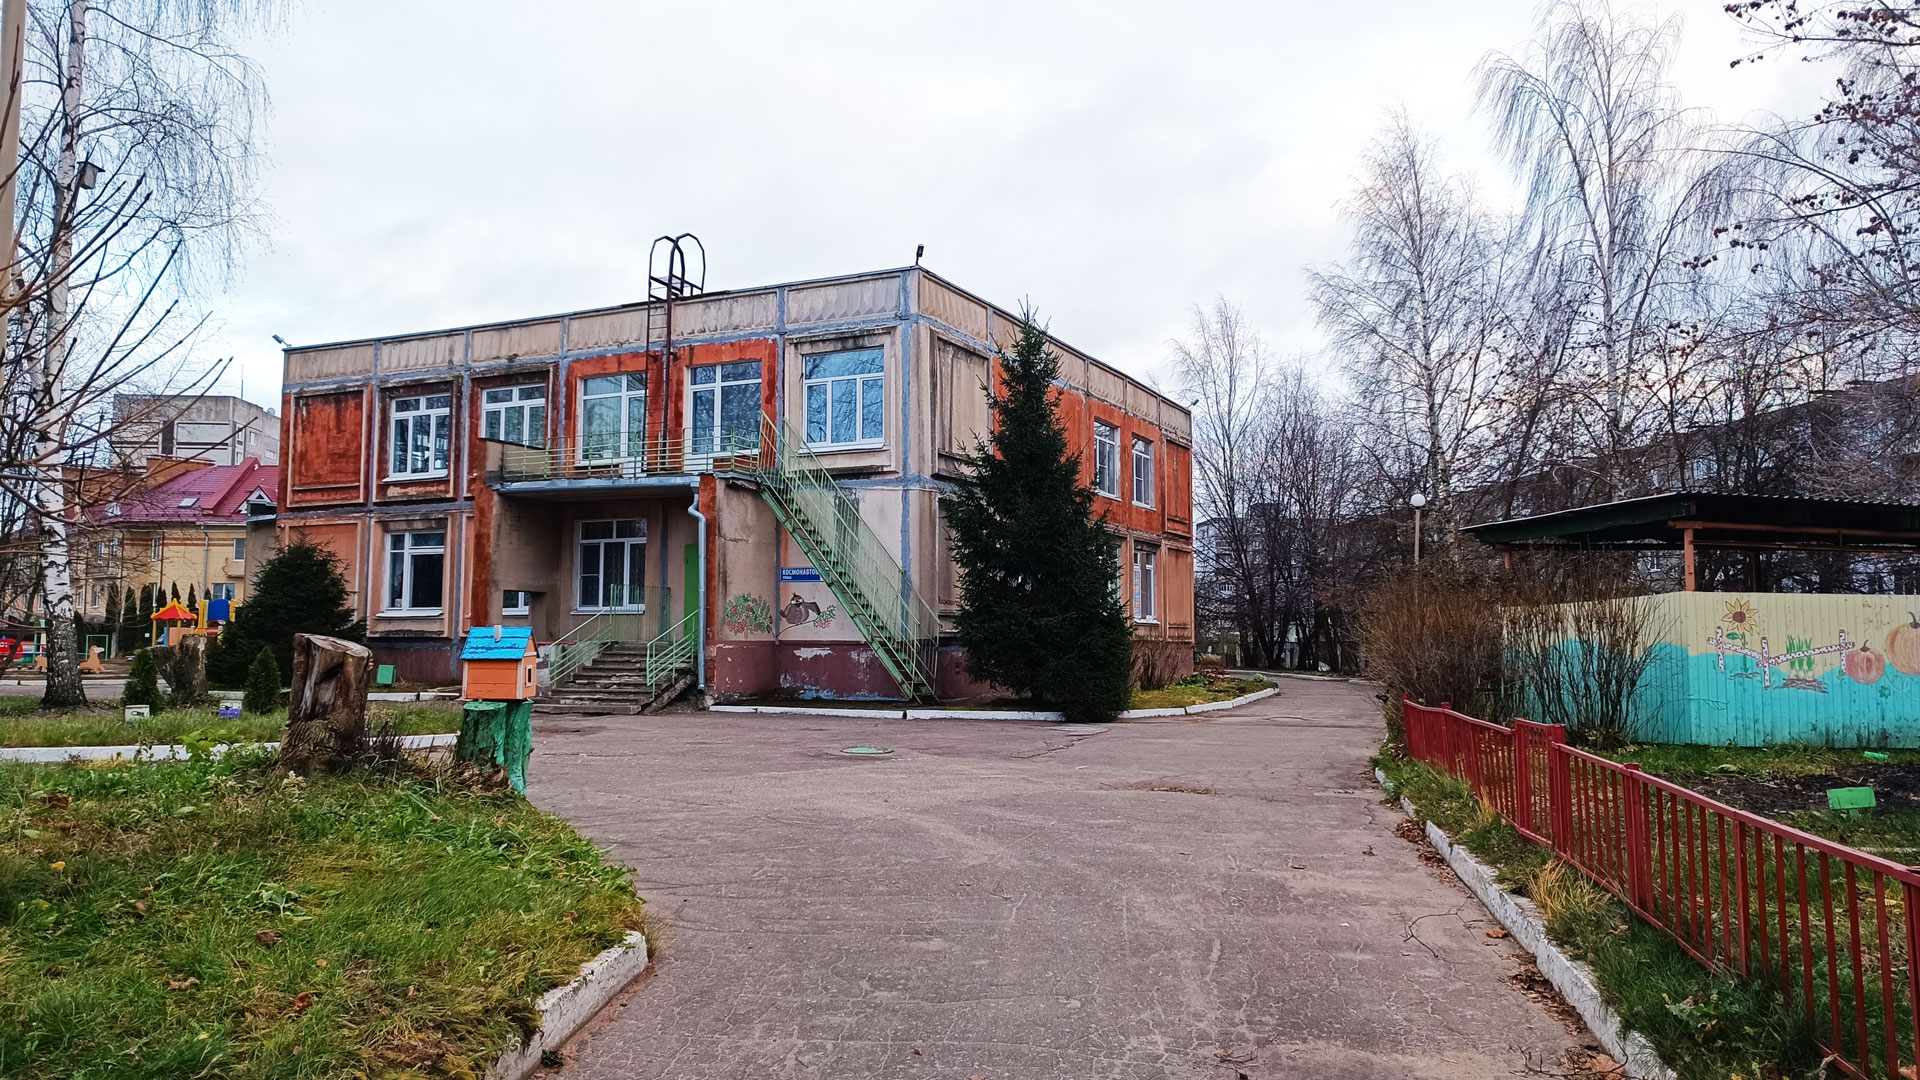 Детский сад 27 Ярославль: общий вид здания.